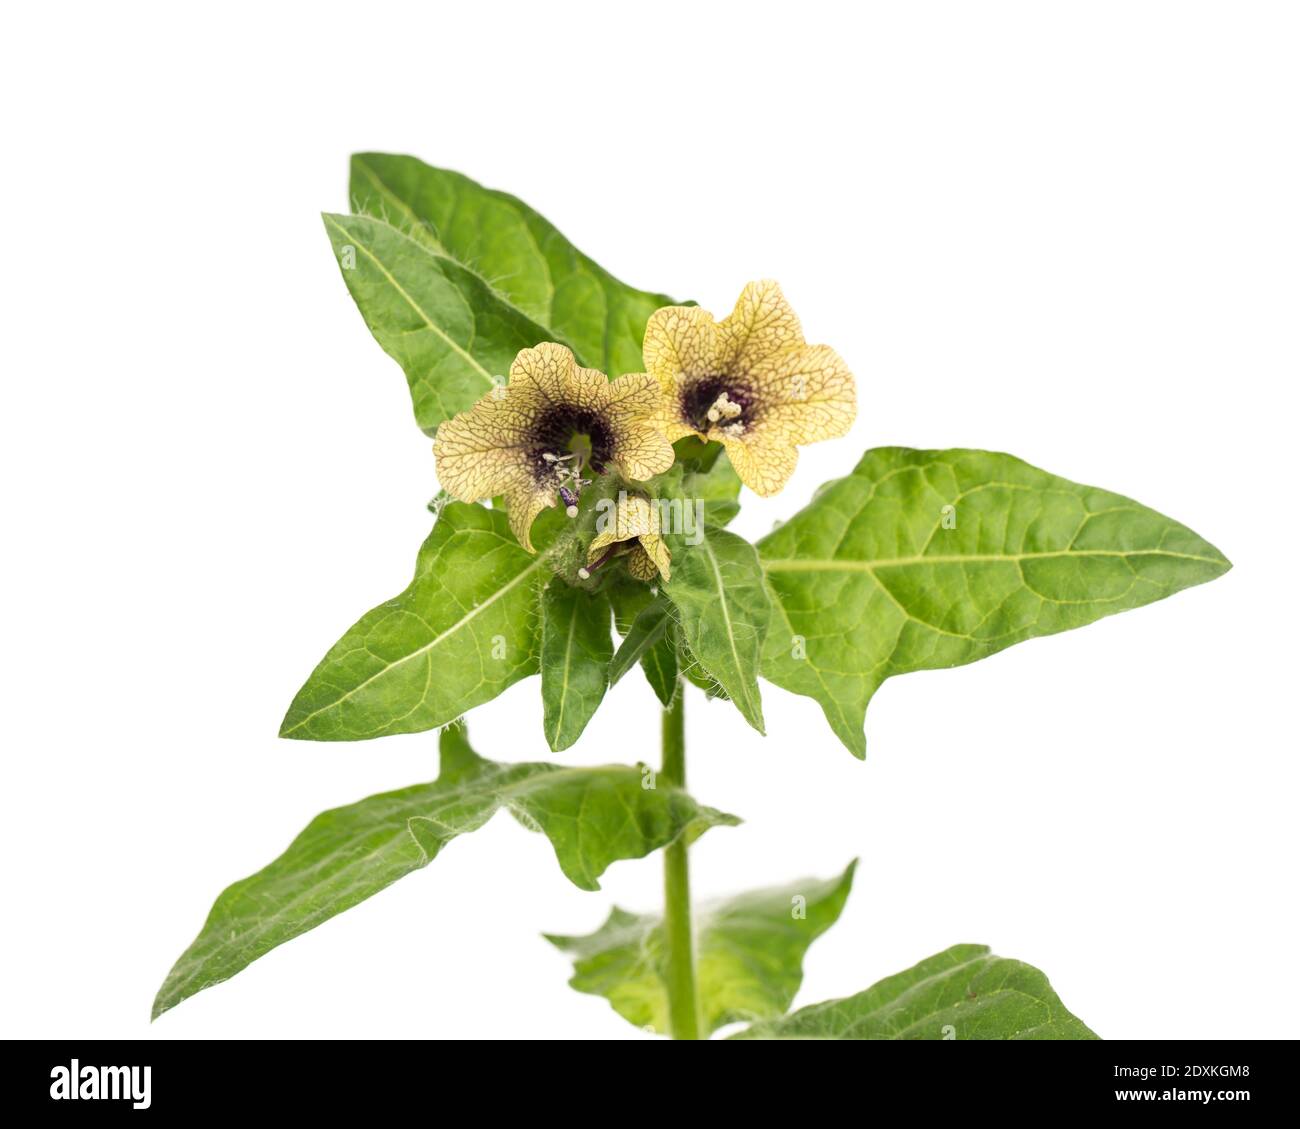 Piante curative: Henbane nero (Hyoscyamus niger) - fioritura e foglie su sfondo bianco Foto Stock